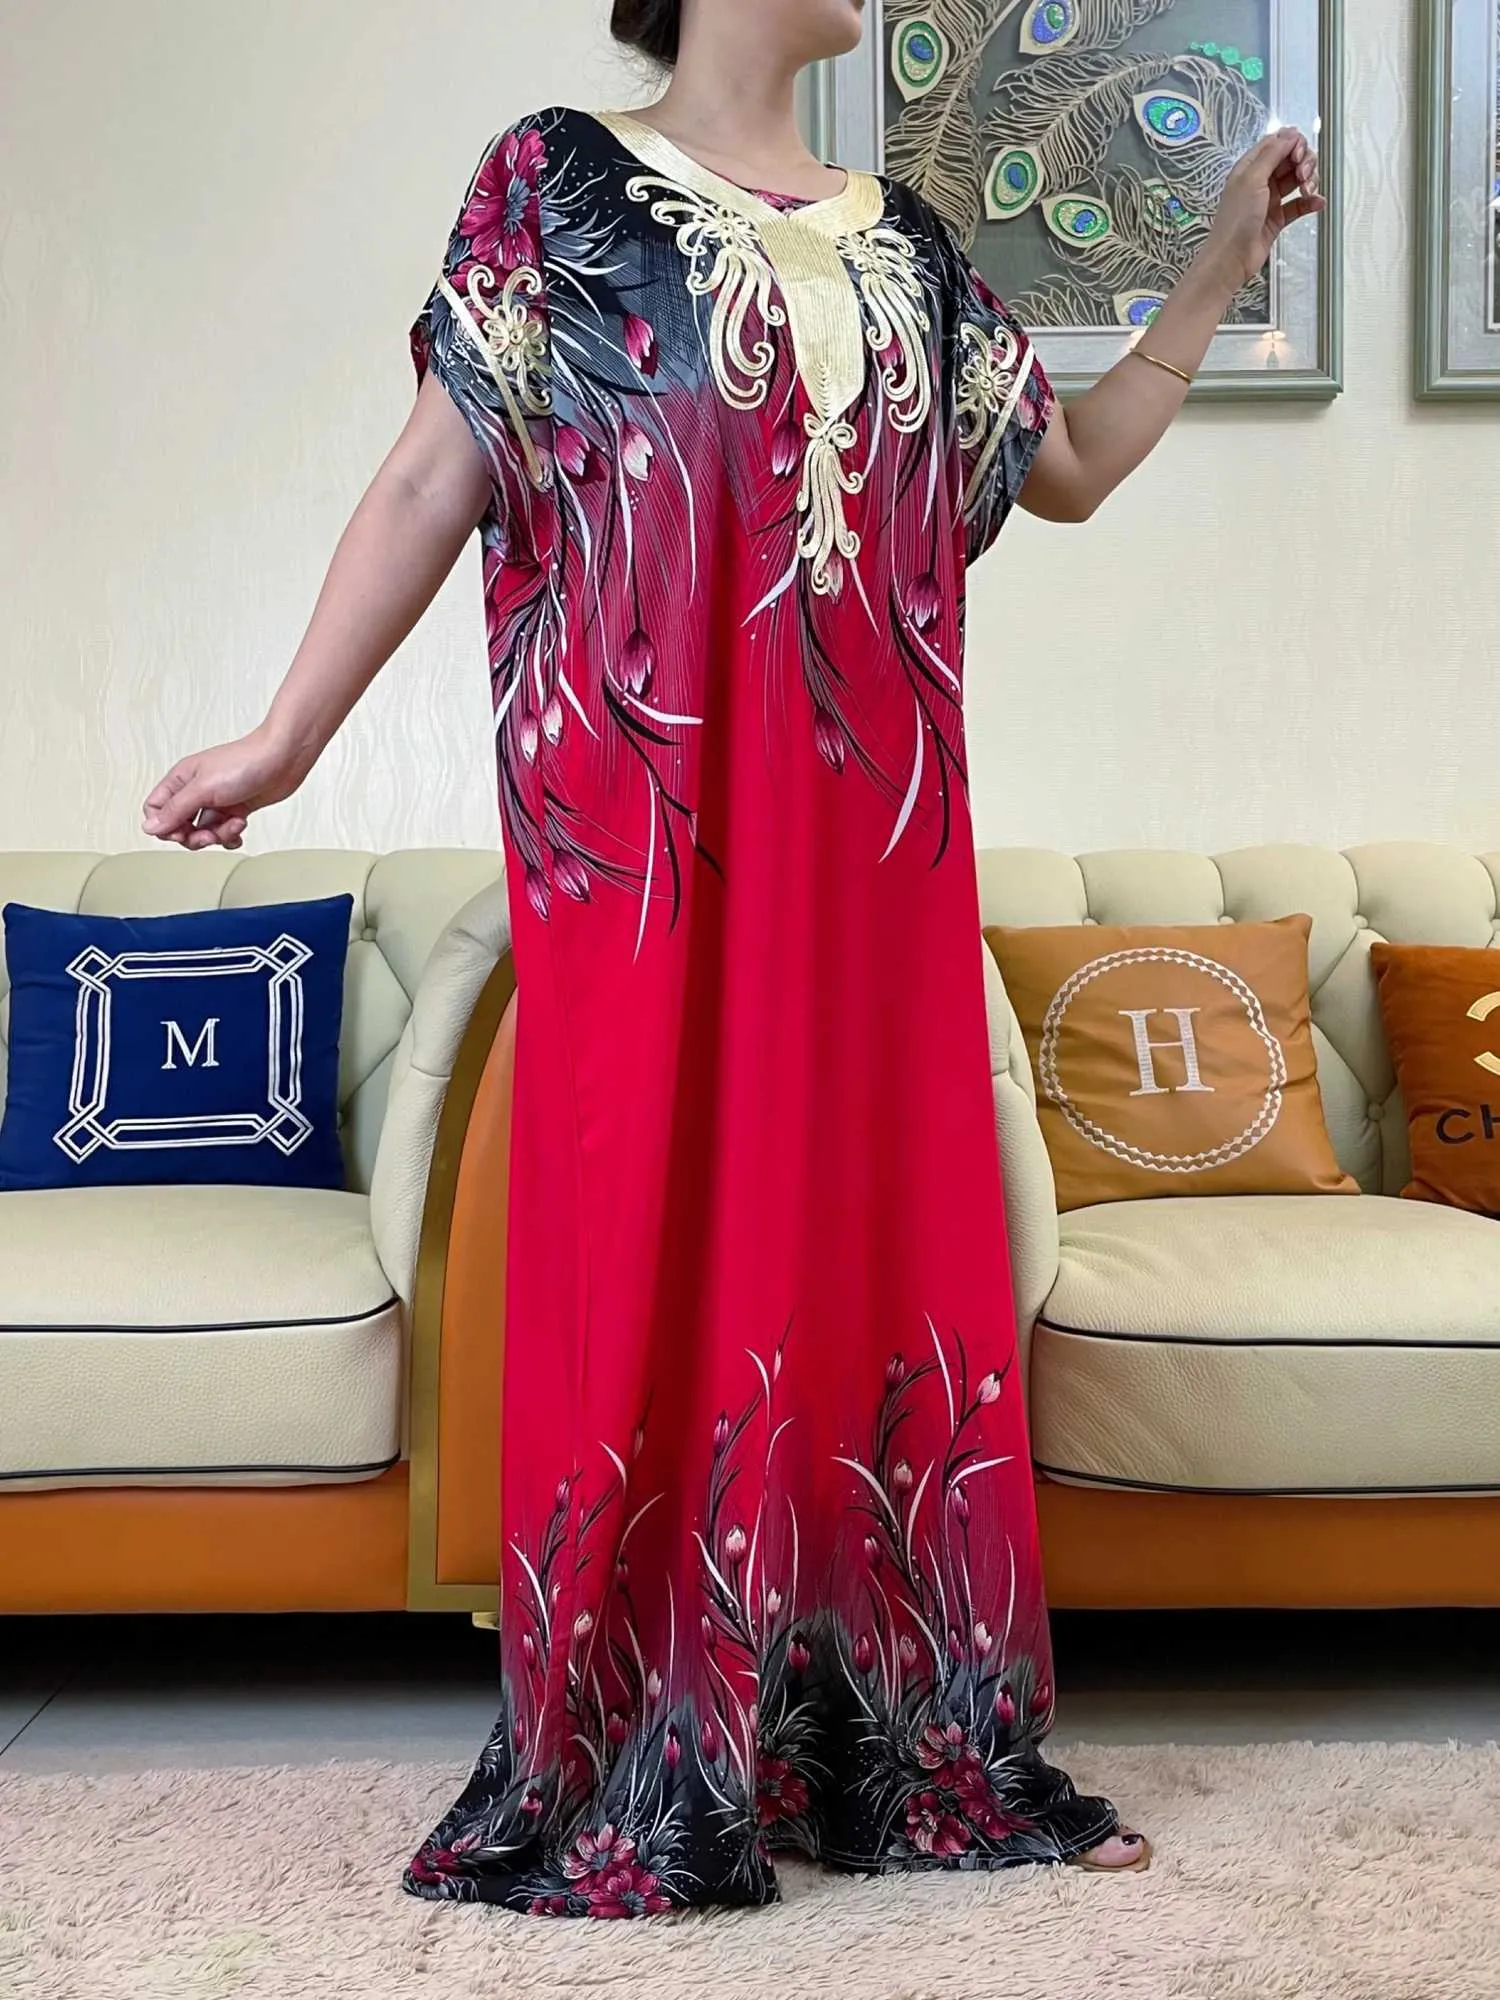 Vêtements ethniques Dernières vente chaude Robe d'impression africaine pour femmes musulmanes Abaya Dubaï Turquie Maslim Fashion Summer Cotton Robe Islam Vêtements T240510